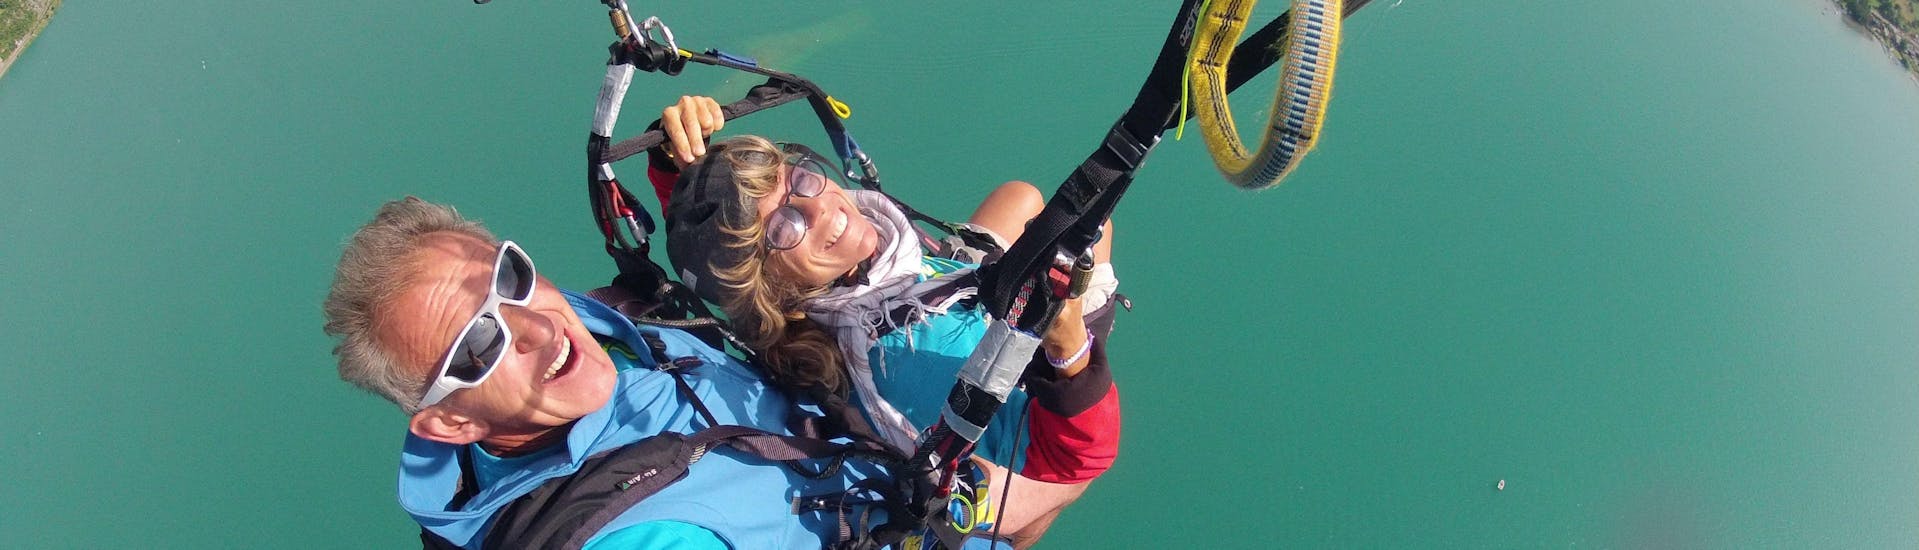 Una donna partecipa al volo in parapendio biposto sul lago di Annecy - opzione Optimum, con FBI Parapente.